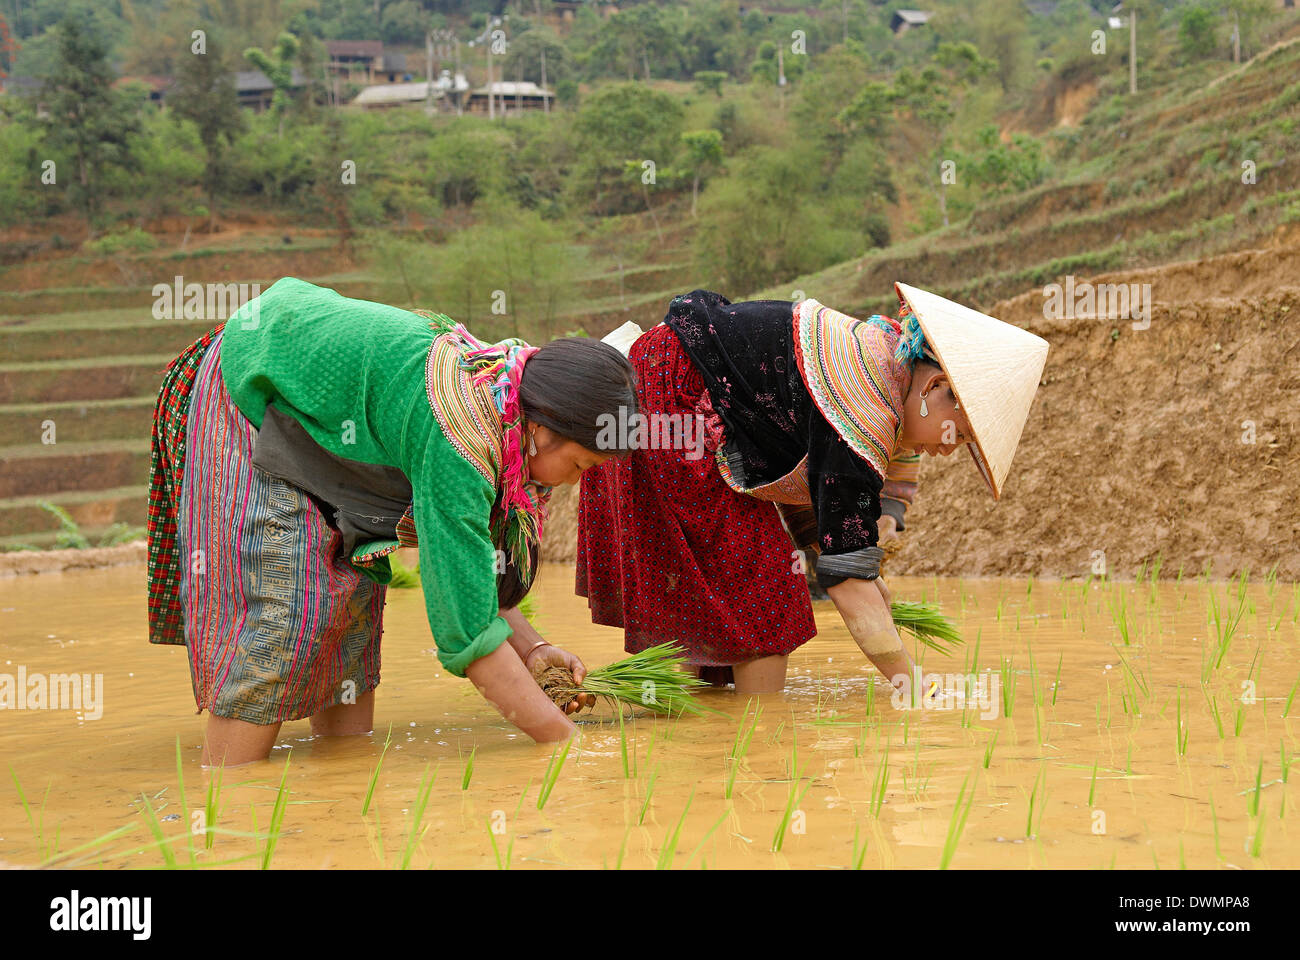 Groupe ethnique hmong fleur femmes travaillant dans le champ de riz, Bac Ha, le Vietnam, l'Indochine, l'Asie du Sud-Est, Asie Banque D'Images